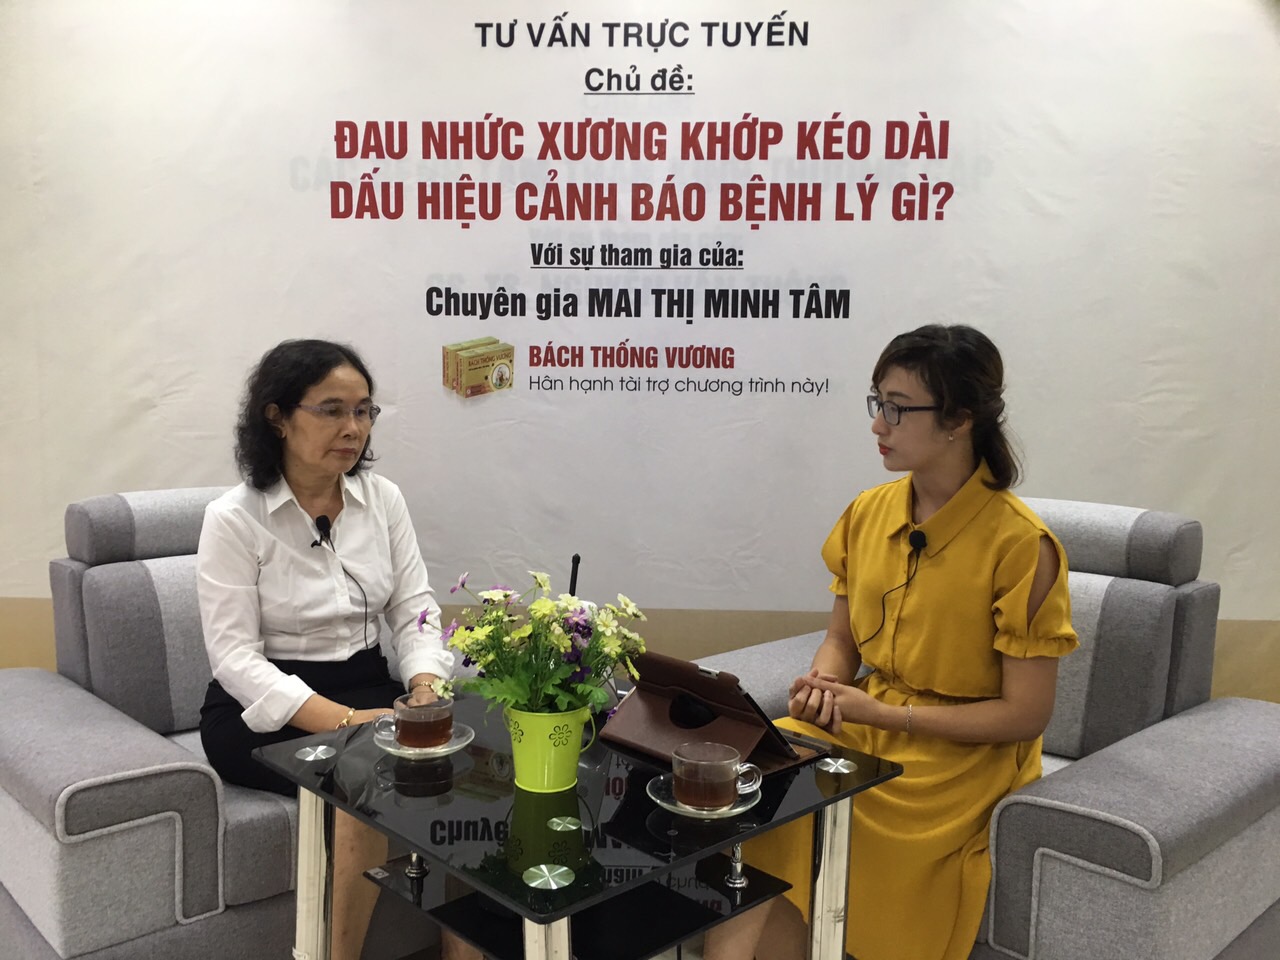 Giao lưu trực tuyến cùng chuyên gia Mai Thị Minh Tâm